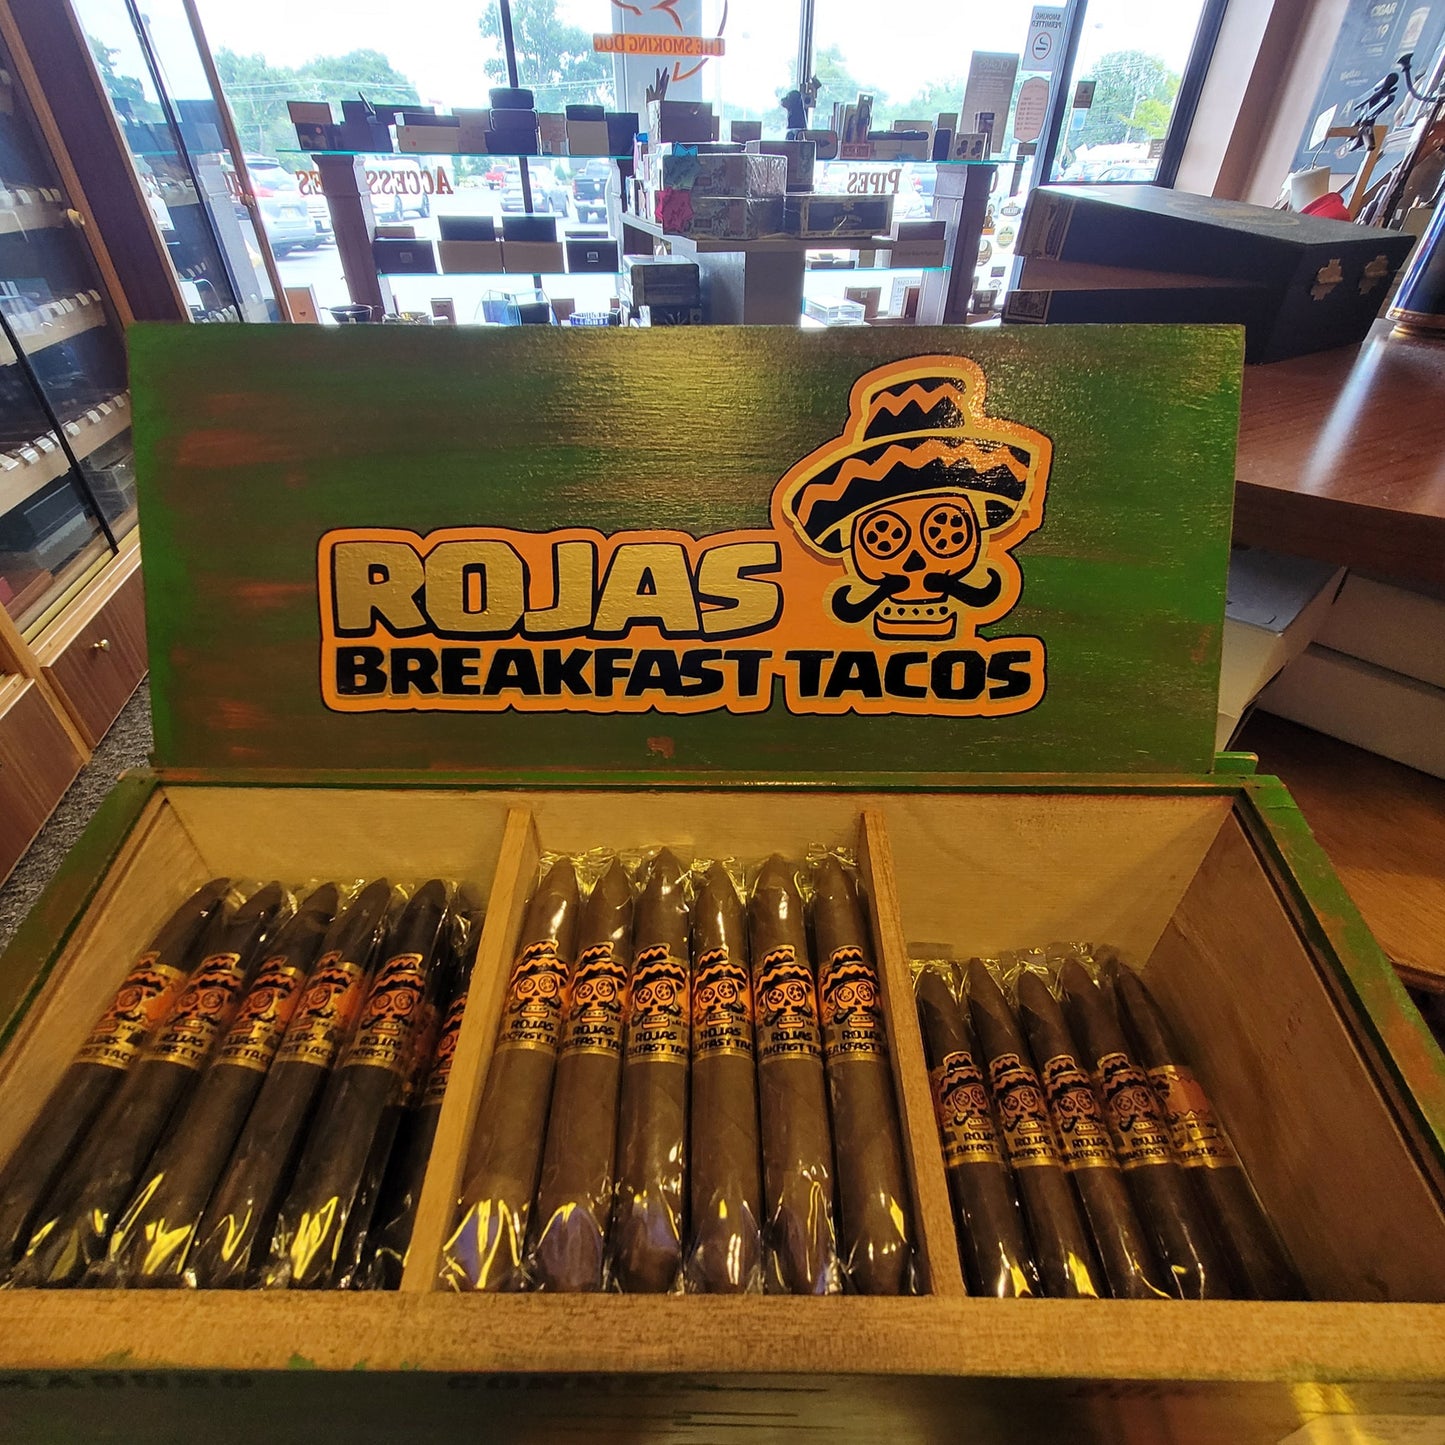 Rojas Cigars Breakfast Tacos